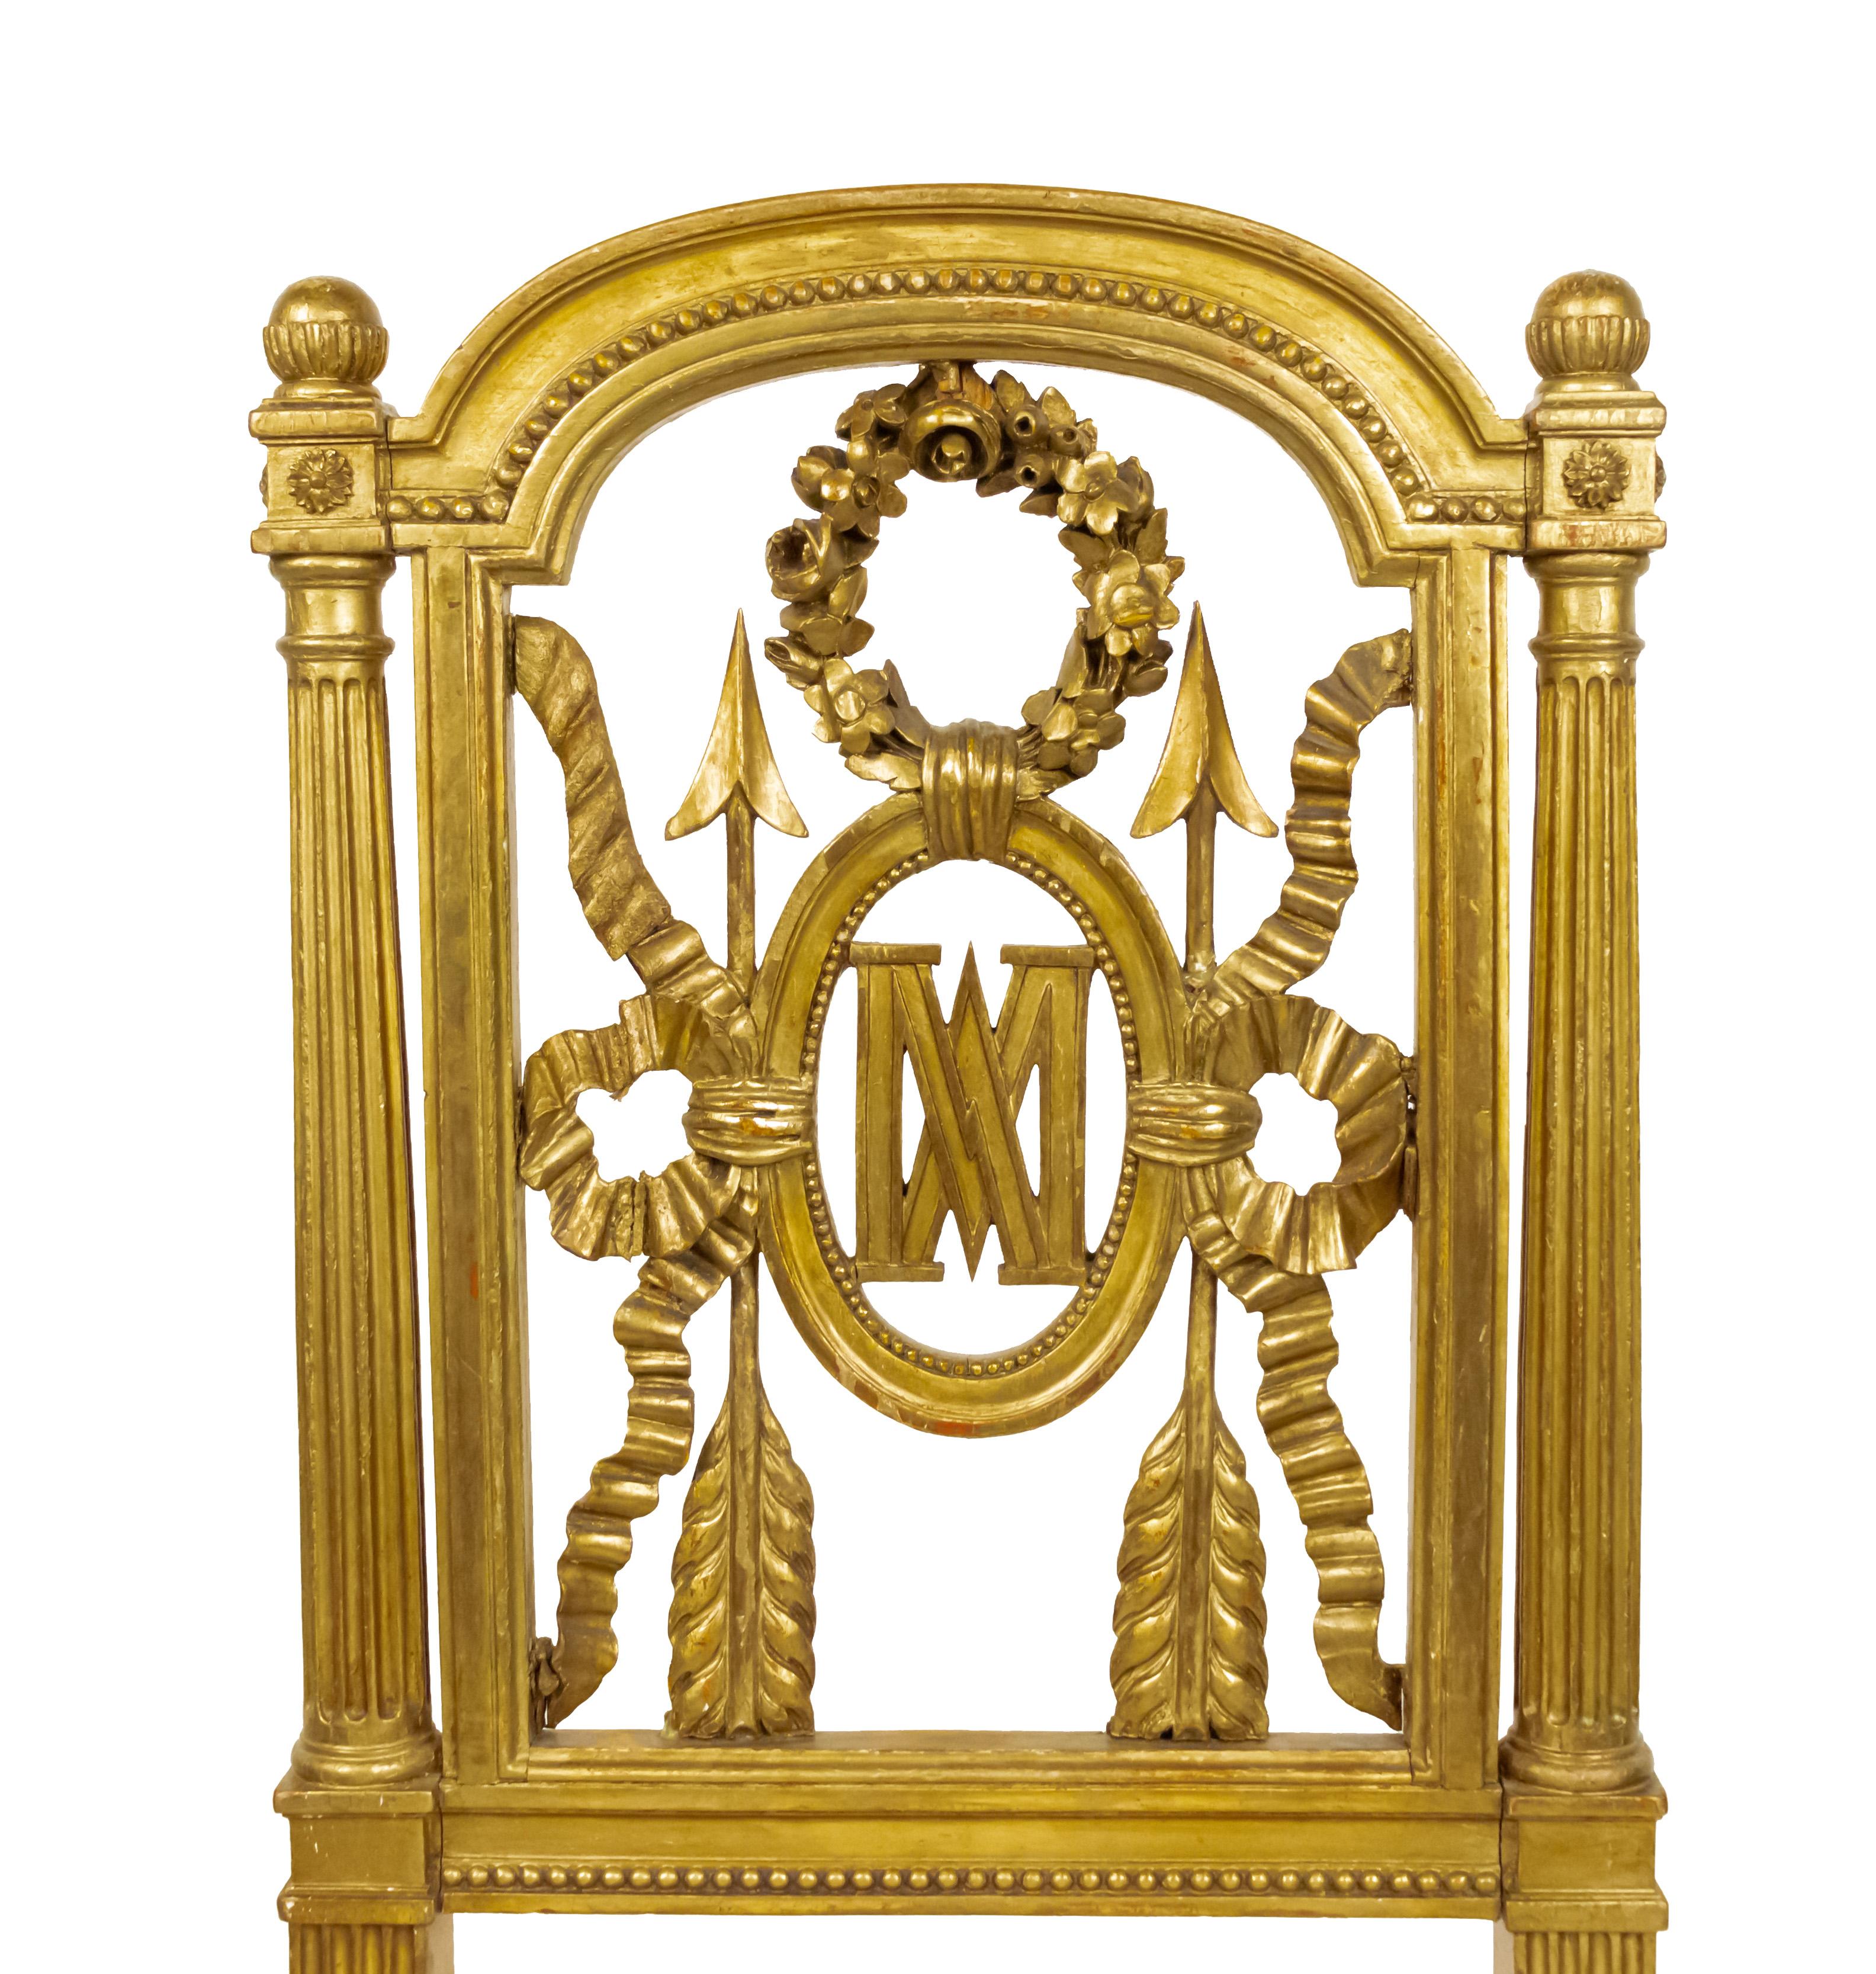 Paire de chaises latérales françaises de style Louis XVI (19e siècle) avec dossier sculpté d'une couronne et d'une flèche et des initiales MA (Marie-Antoinette) et tapisserie géométrique contemporaine blanc cassé multicolore.
 